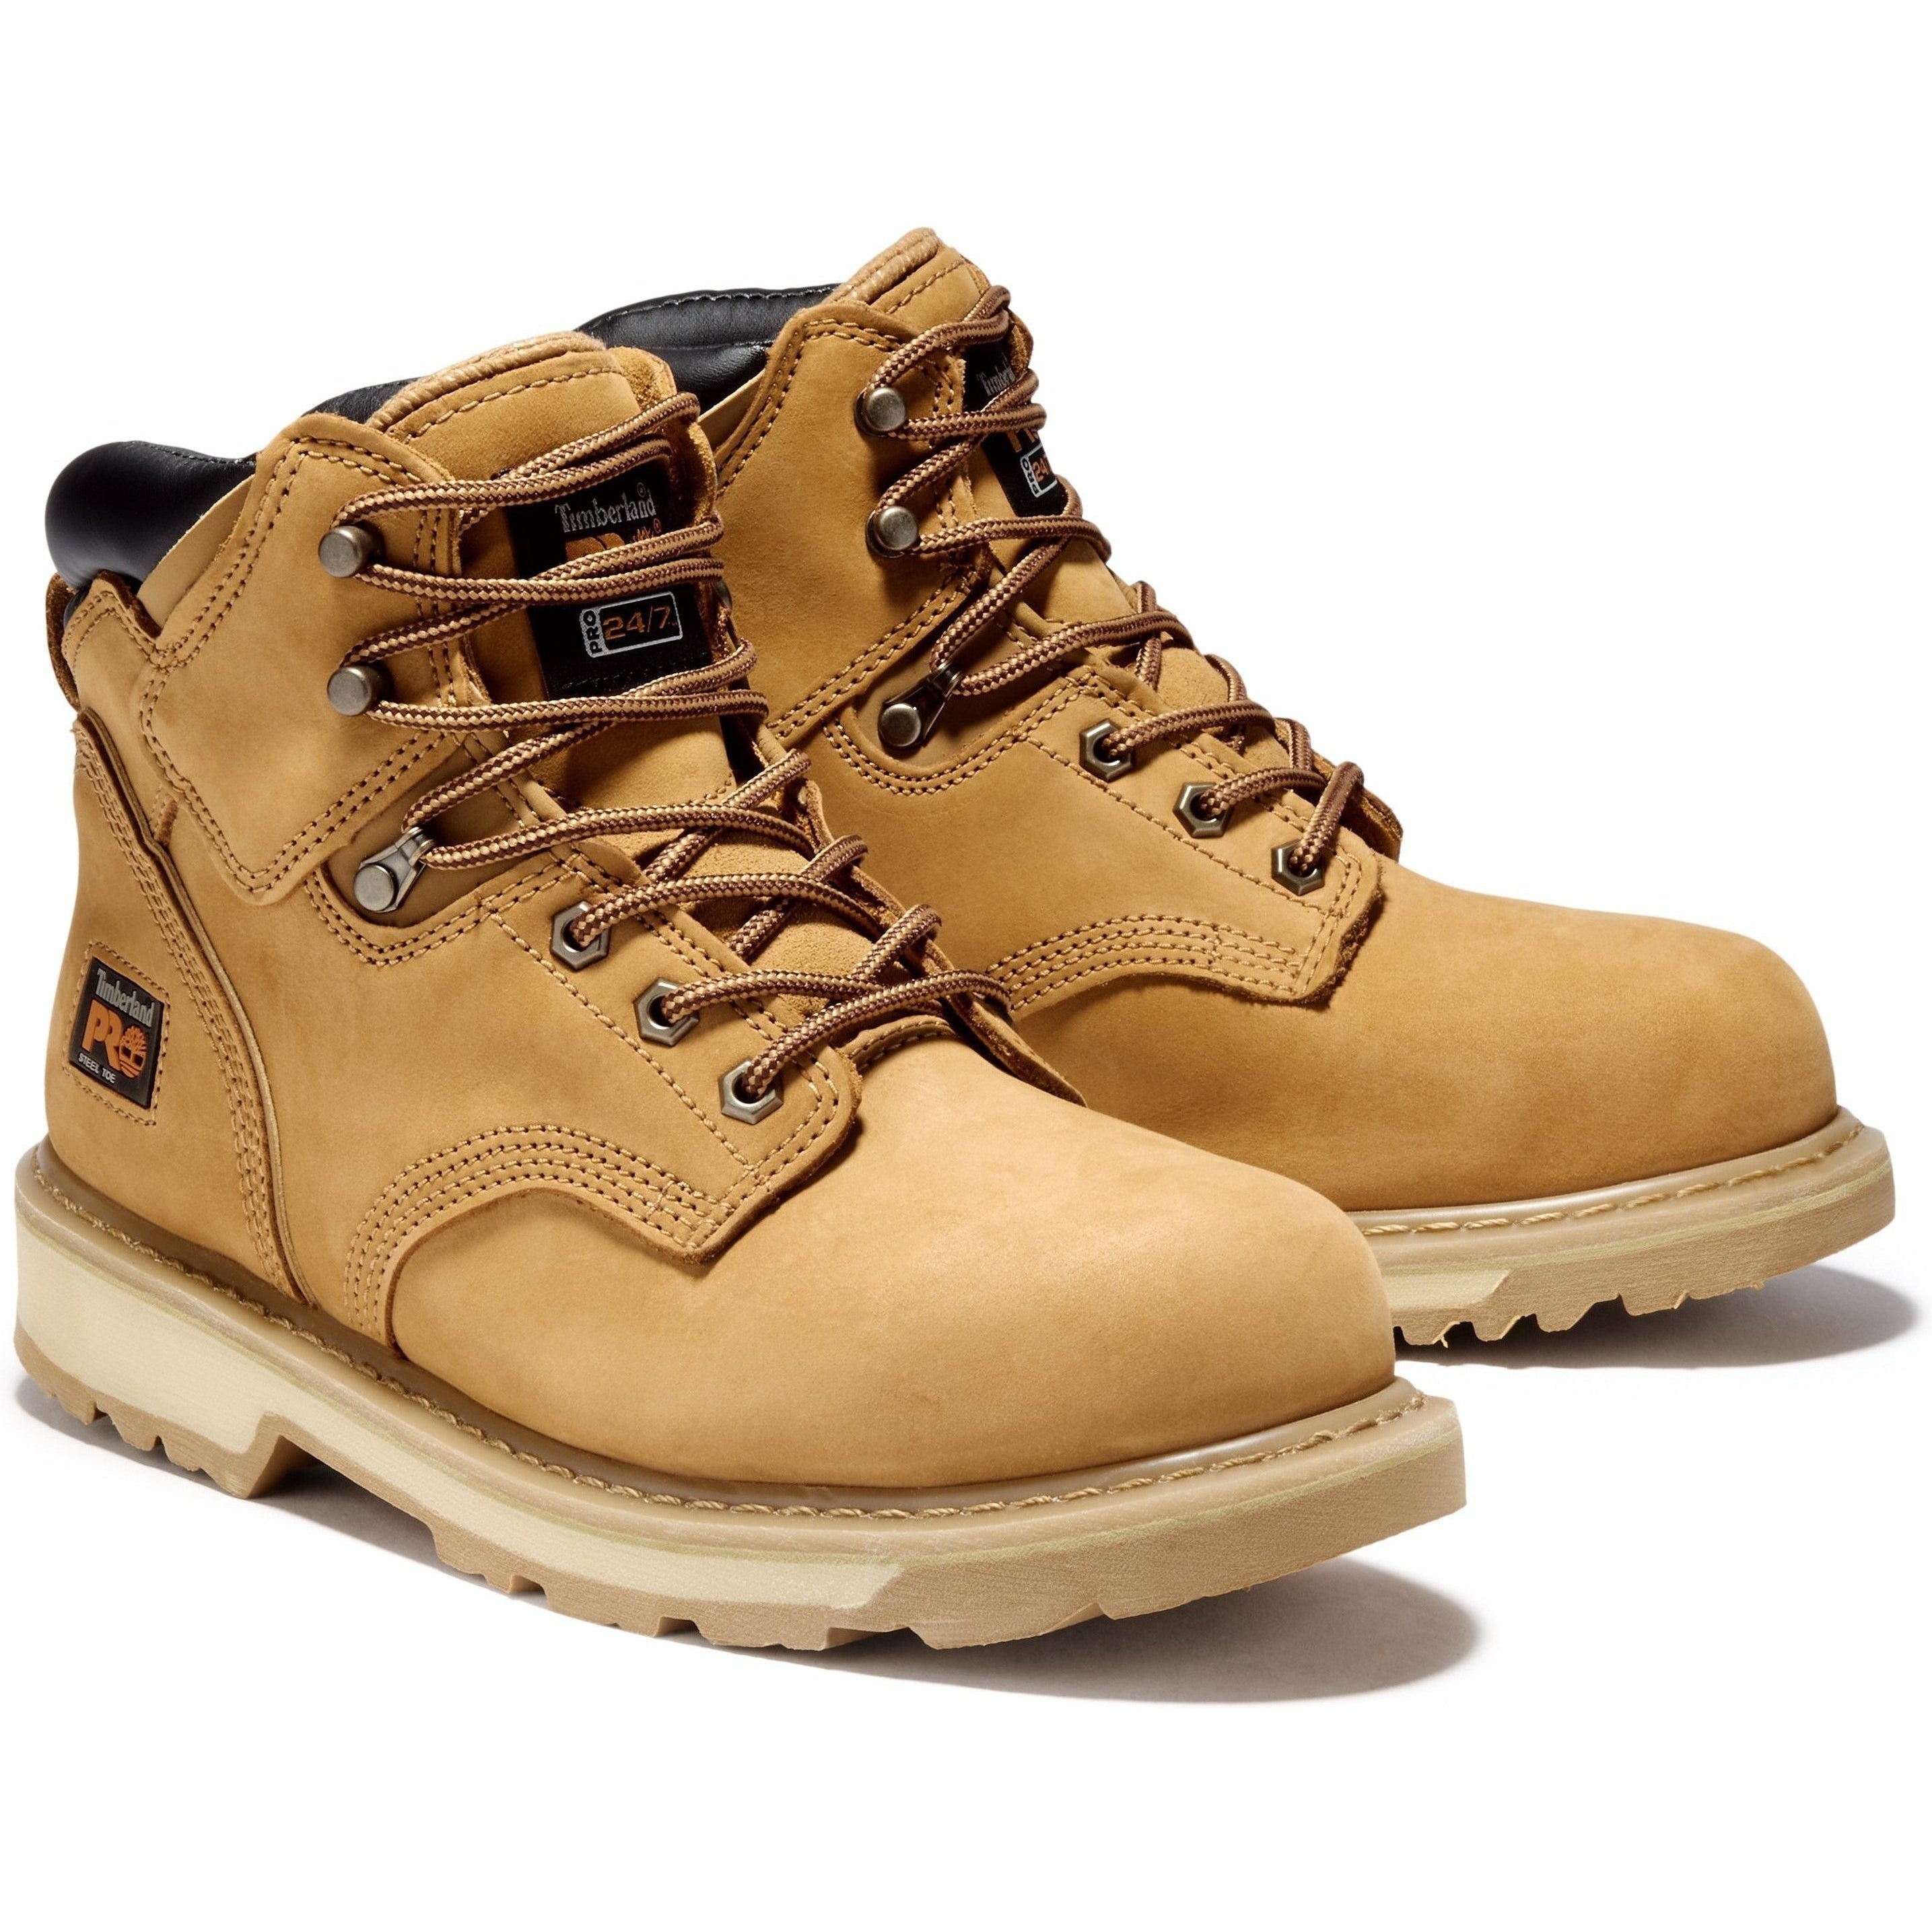 Timberland PRO Men's Pit Boss 6" Steel Toe Work Boot - TB033031231 7 / Medium / Wheat Nubuck - Overlook Boots